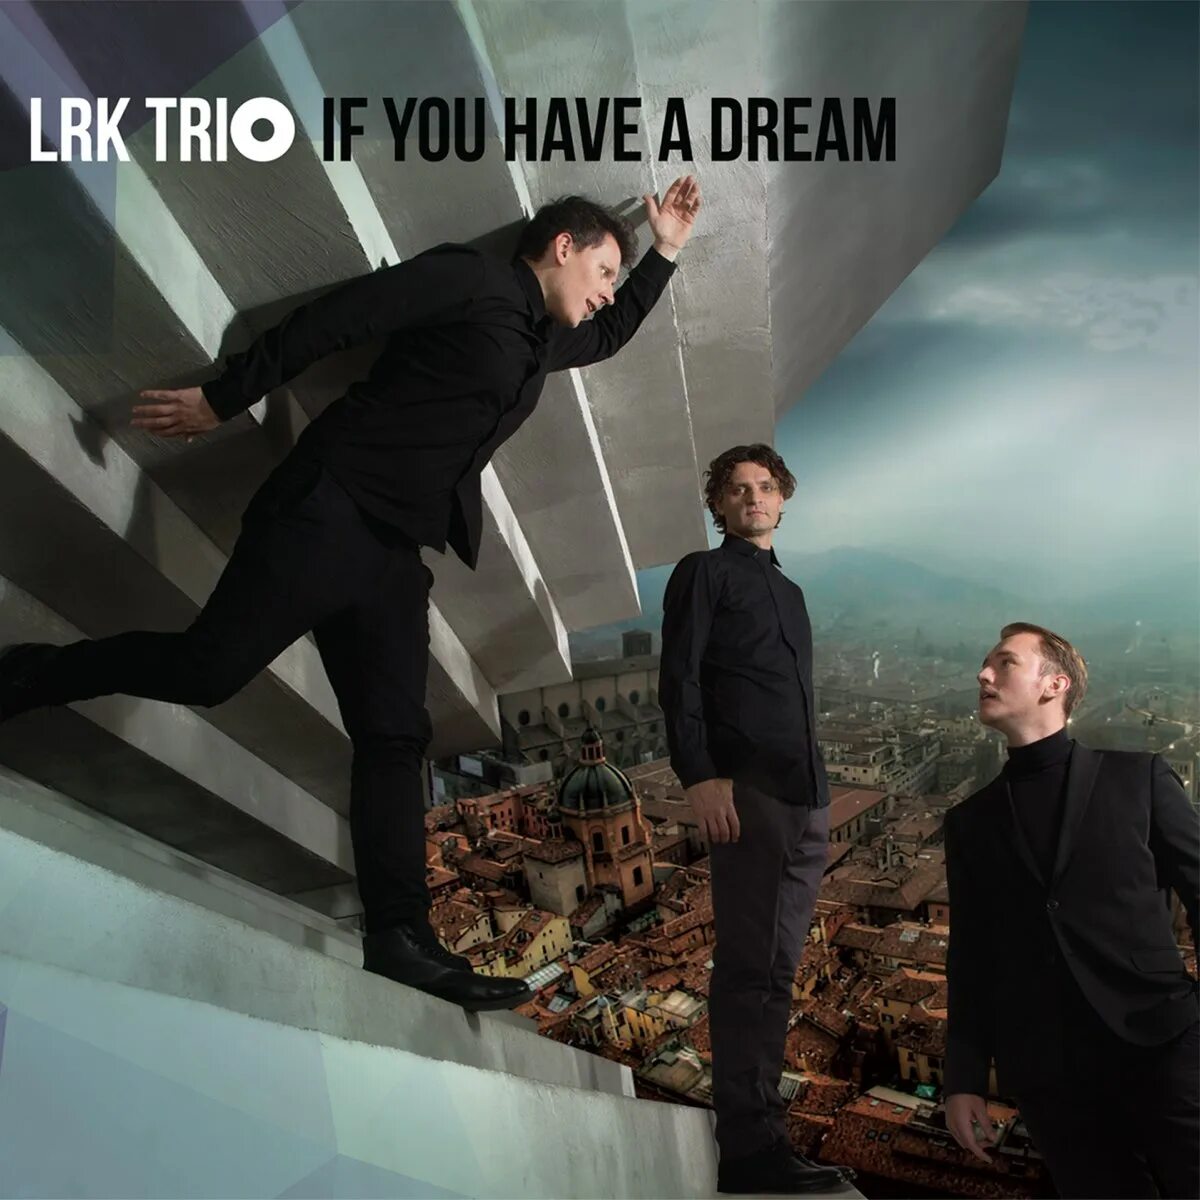 He has a dream. LRK трио. LRK. If you have a Dream. LRK Trio Winter.